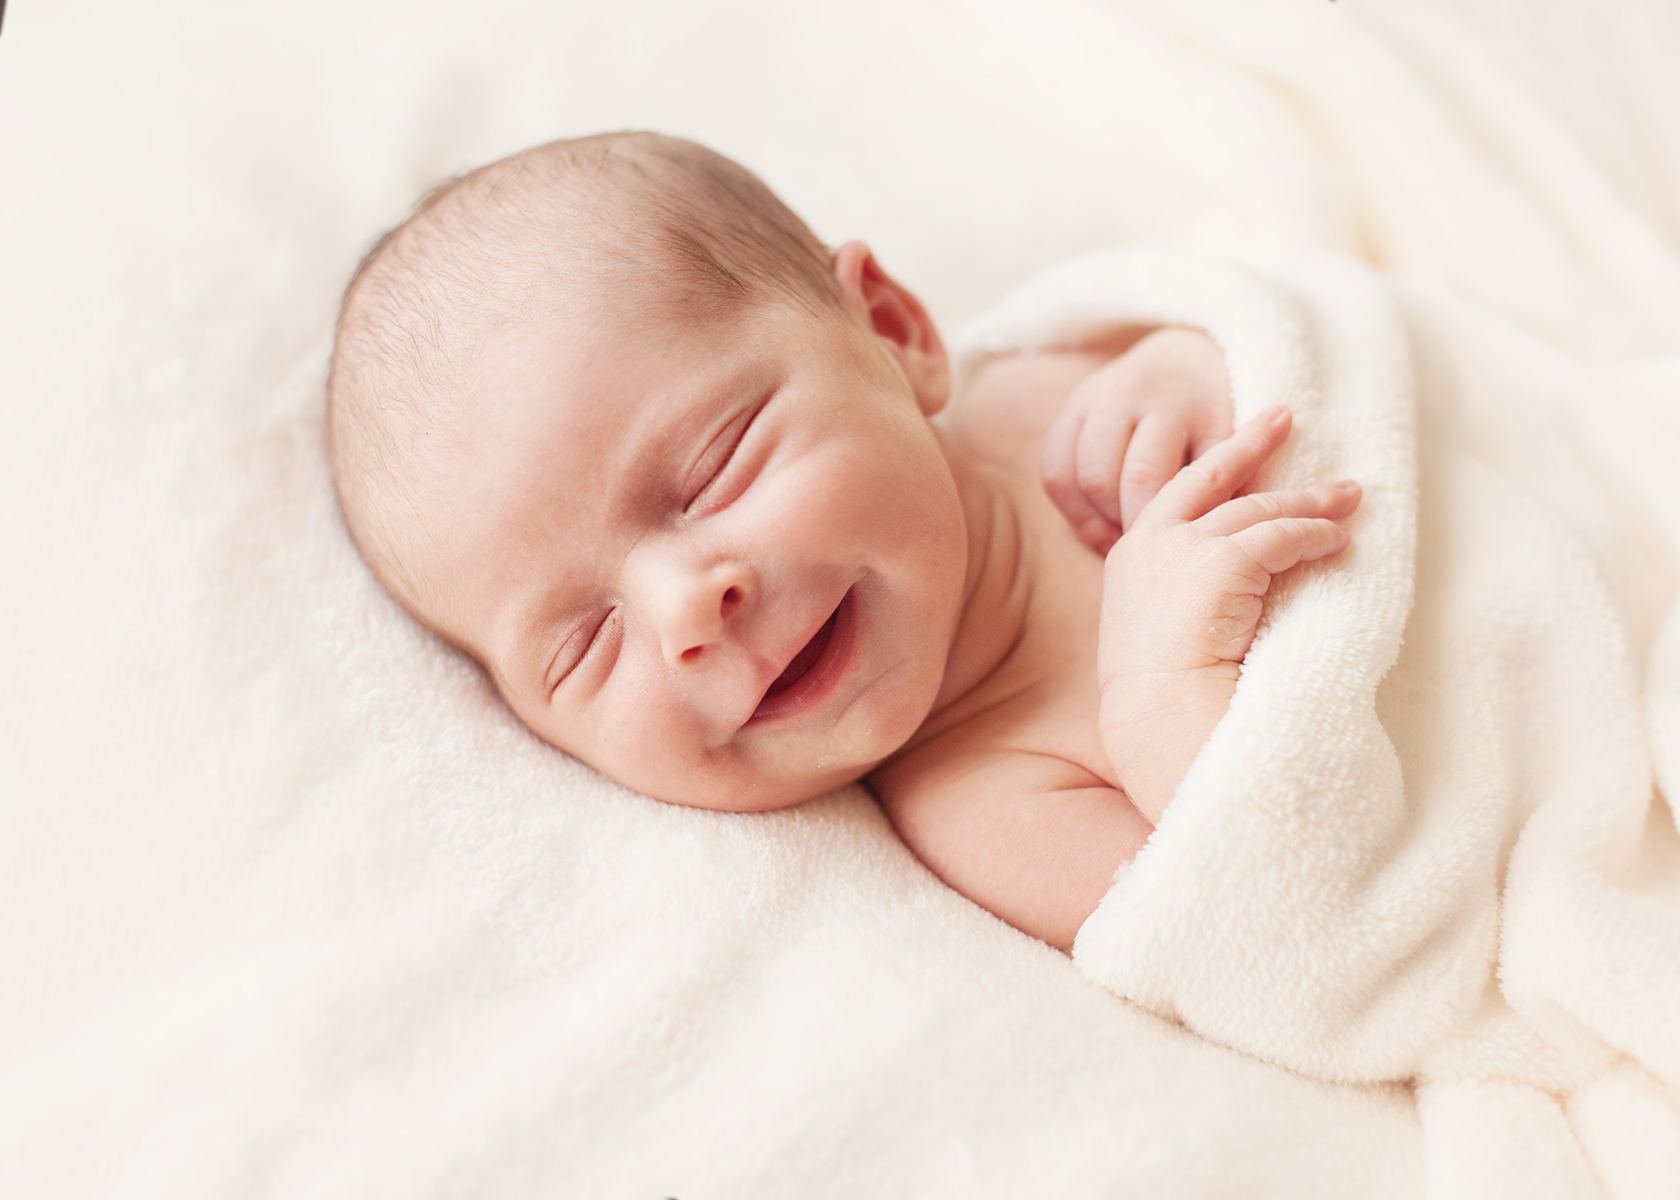 Новорожденный ребенок. Неворожденный ребёнок. Зебренок новорожденный. Младенец улыбается.